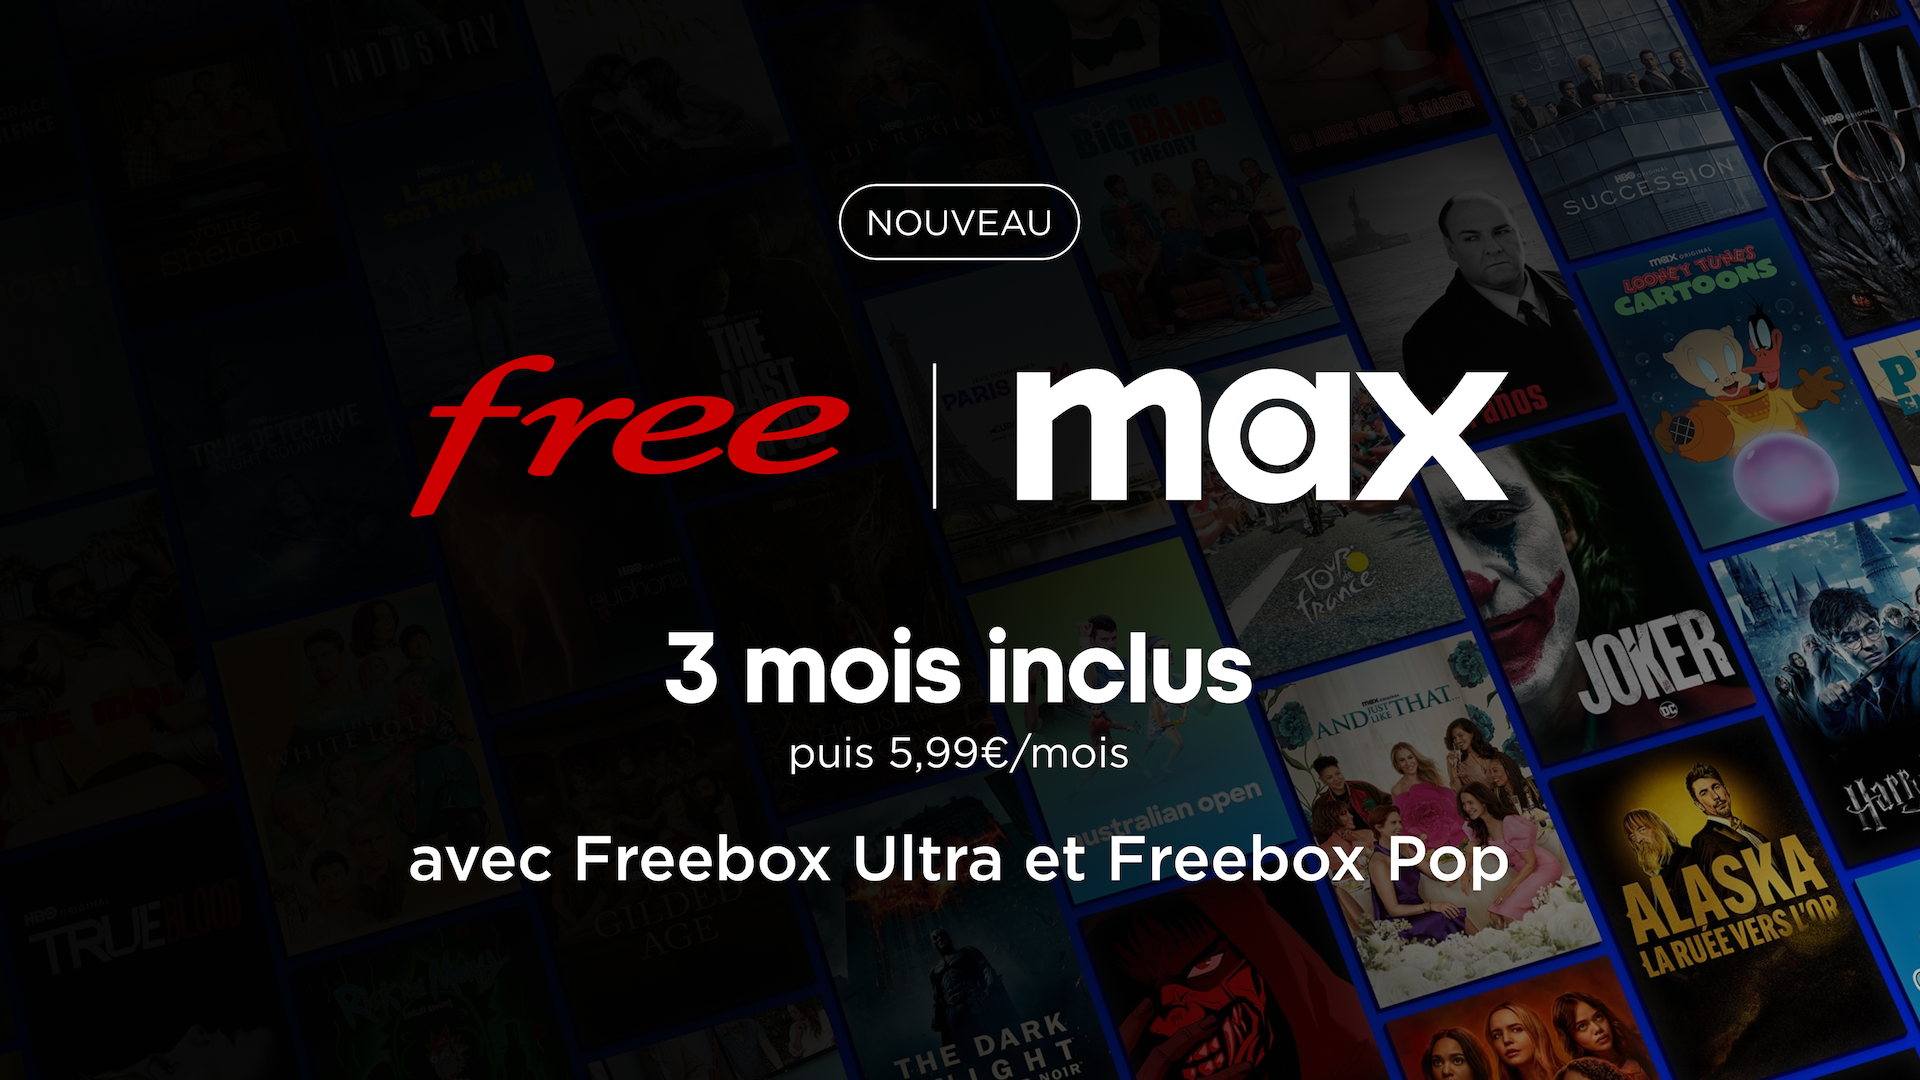 Le nouveau service de streaming Max débarque chez Free: 3 mois inclus pour les abonnés Freebox Ultra et Pop 